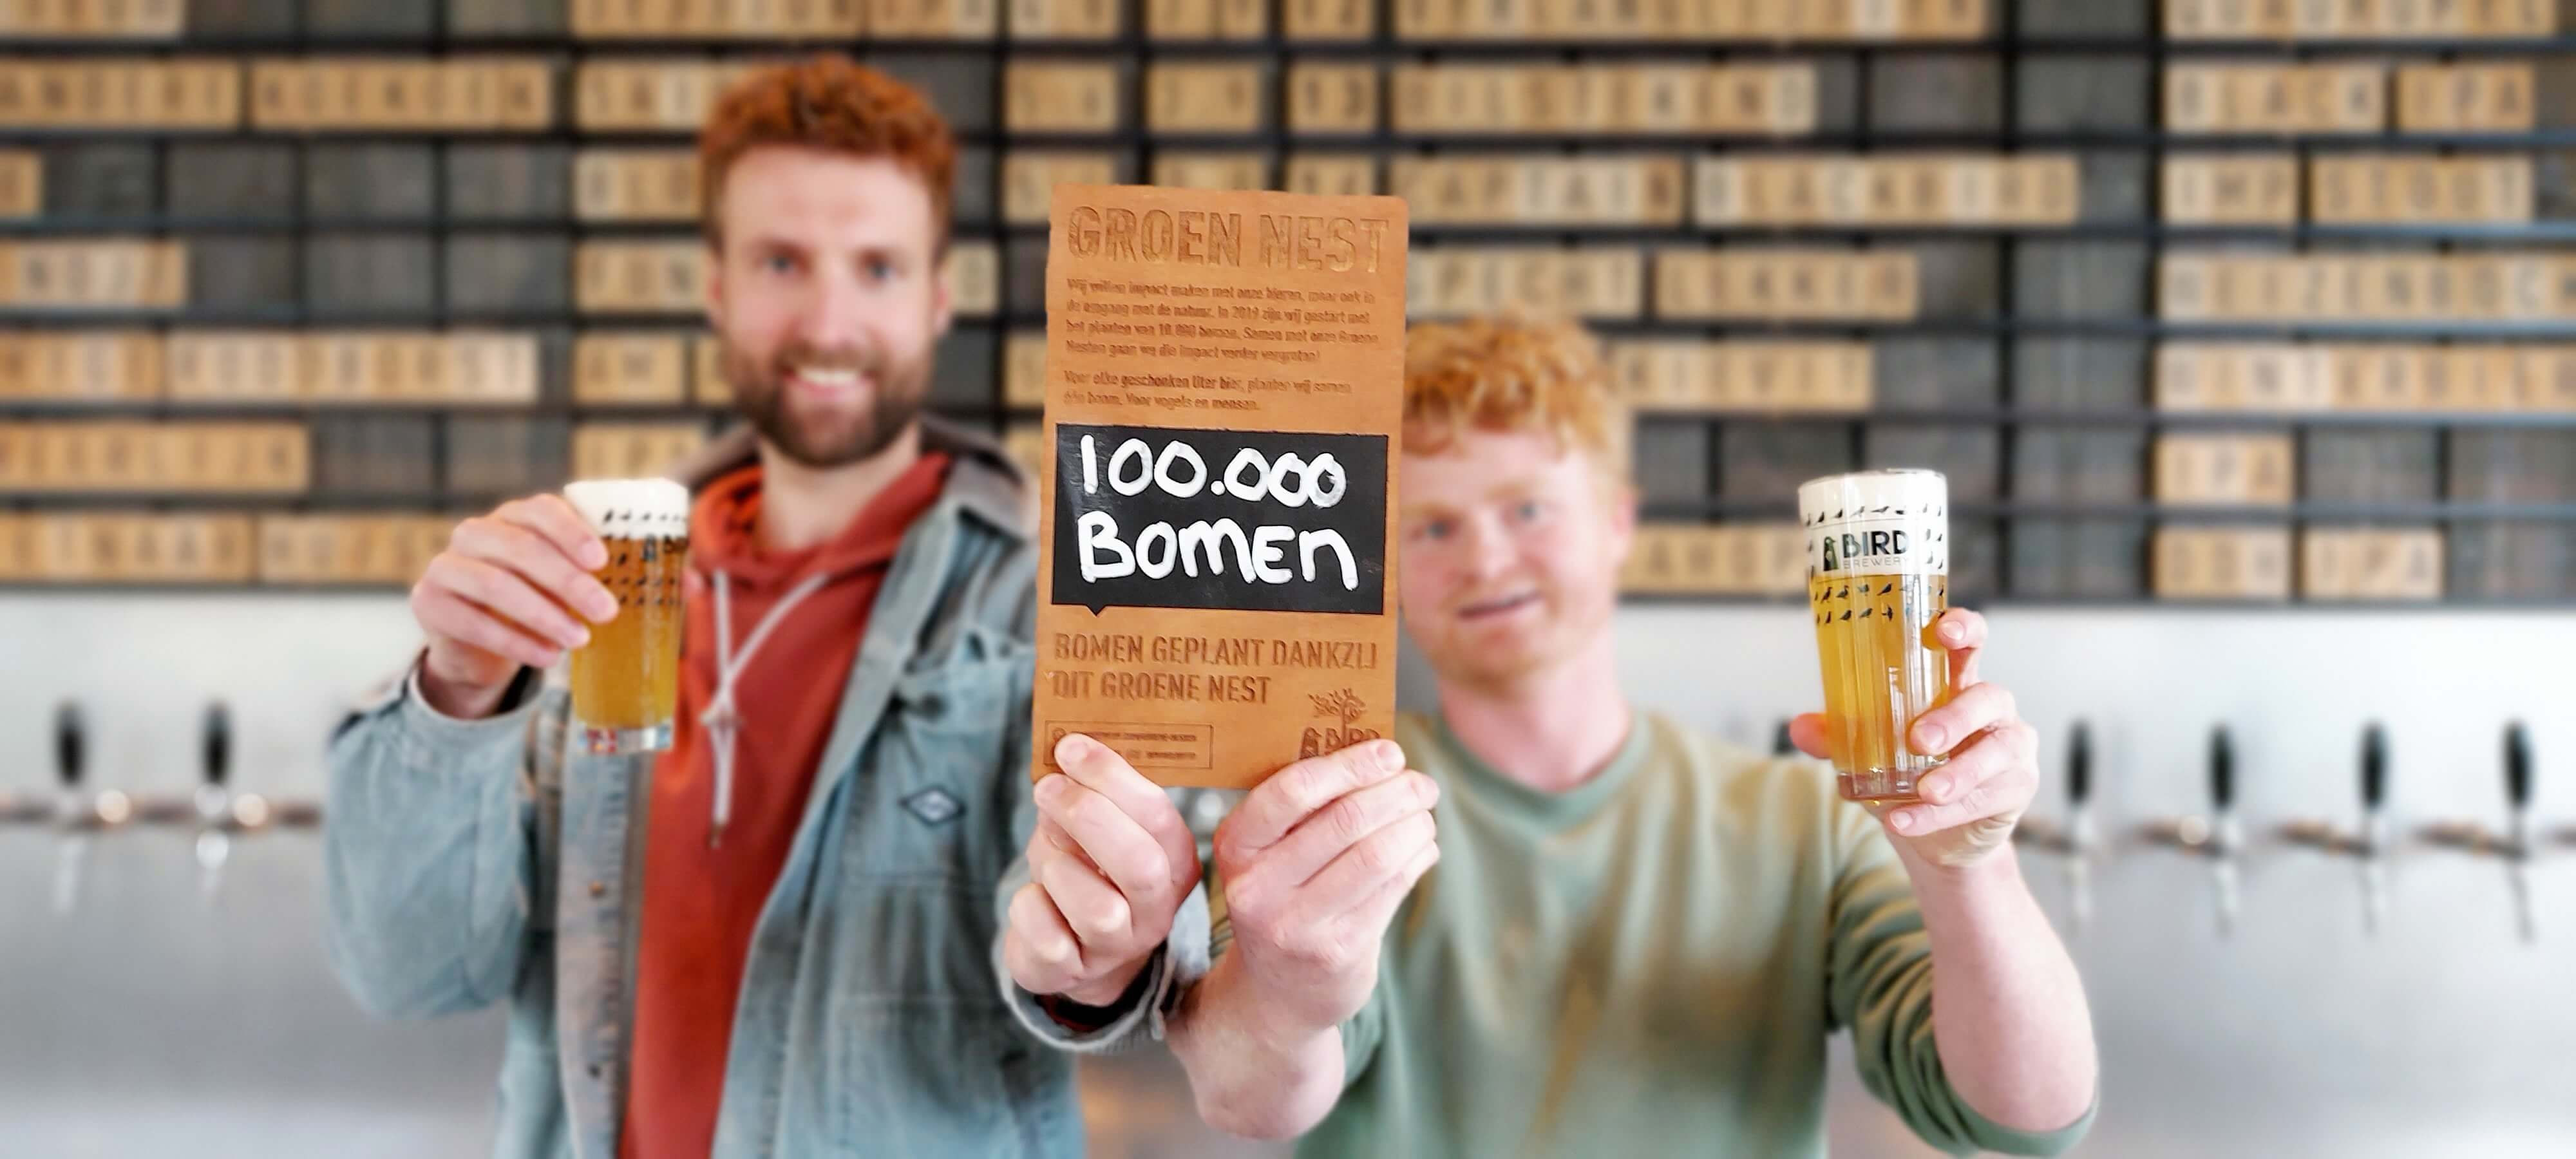 bird-brewery-100000-bomen-geplant.jpg